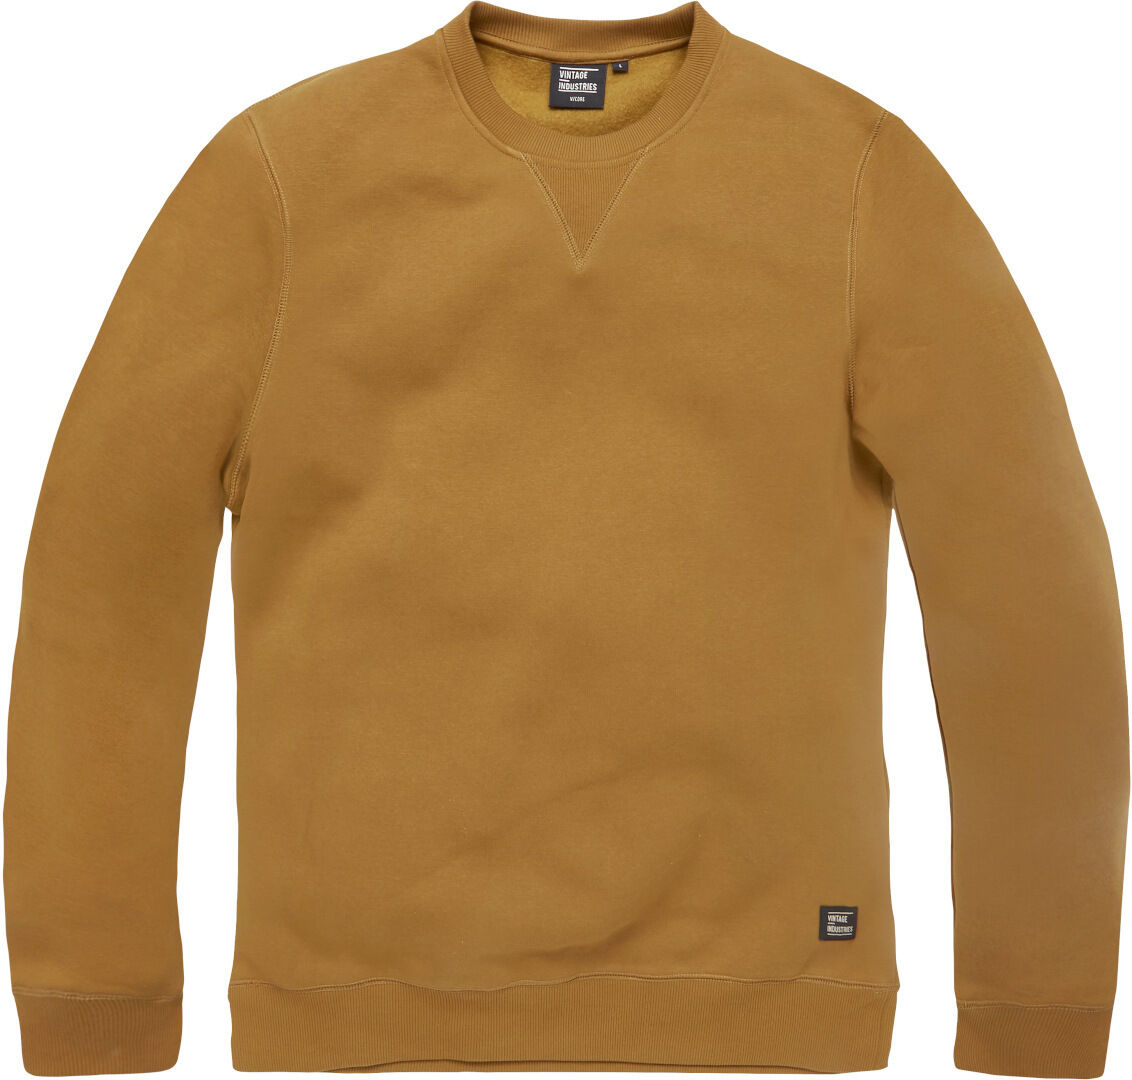 Vintage Industries Greeley Crewneck Sweatshirt Brun M